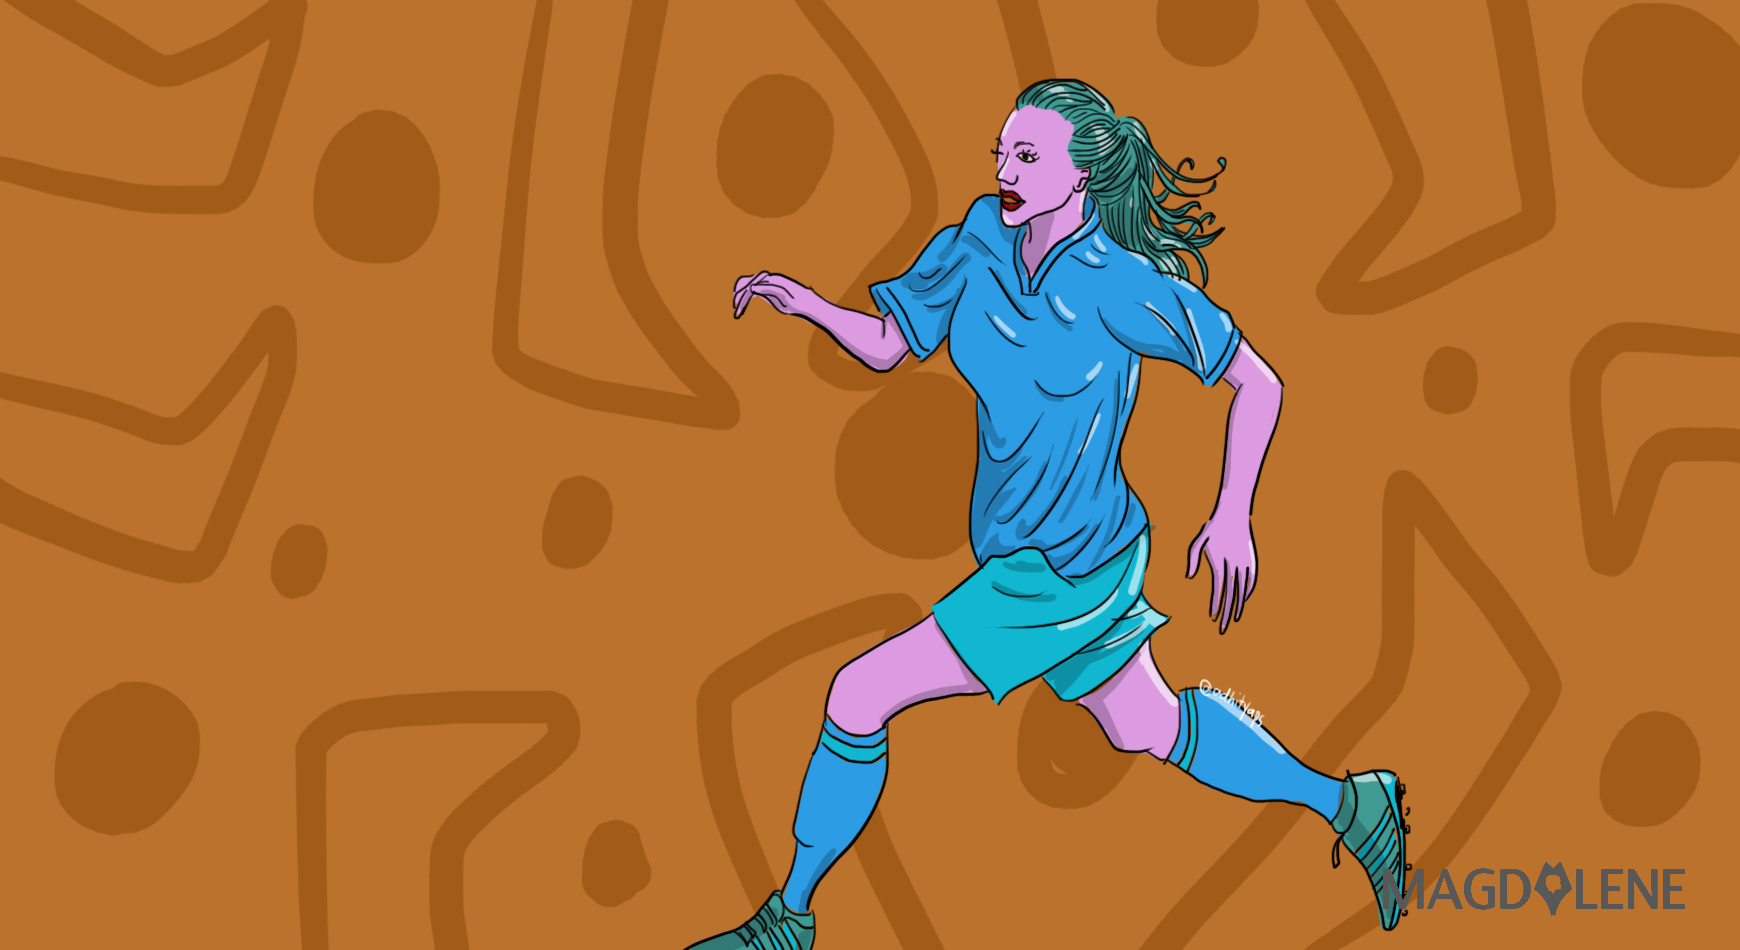 Kapten Cantik, Bidadari Lapangan: Kosa Kata Media untuk Sepak Bola Perempuan